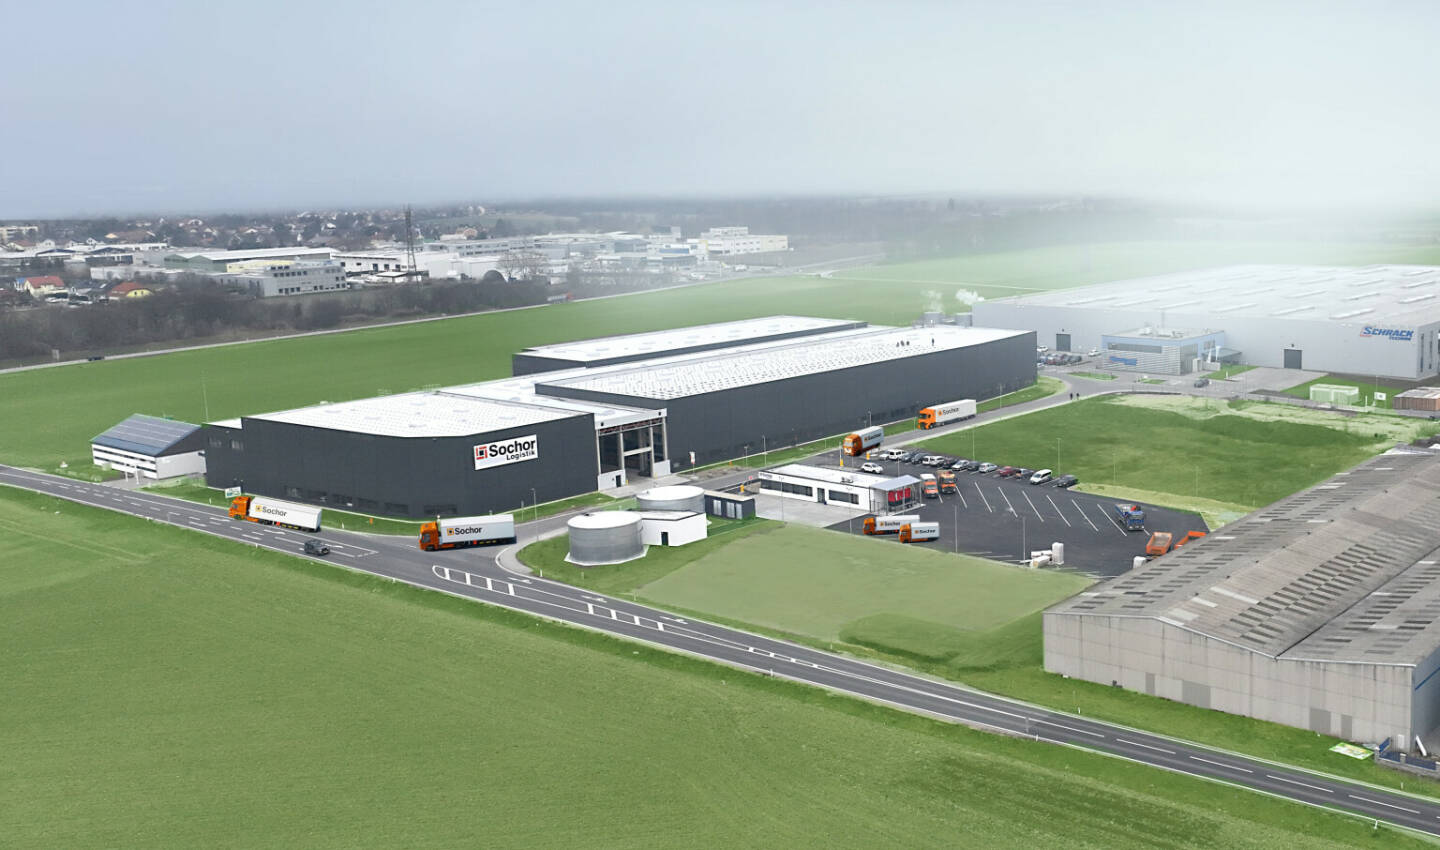 Baustoffhandel A. Sochor & Co GmbH eröffnet innovatives Logistikzentrum in Achau, Fotocredit:Baustoffhandel A. Sochor & Co GmbH